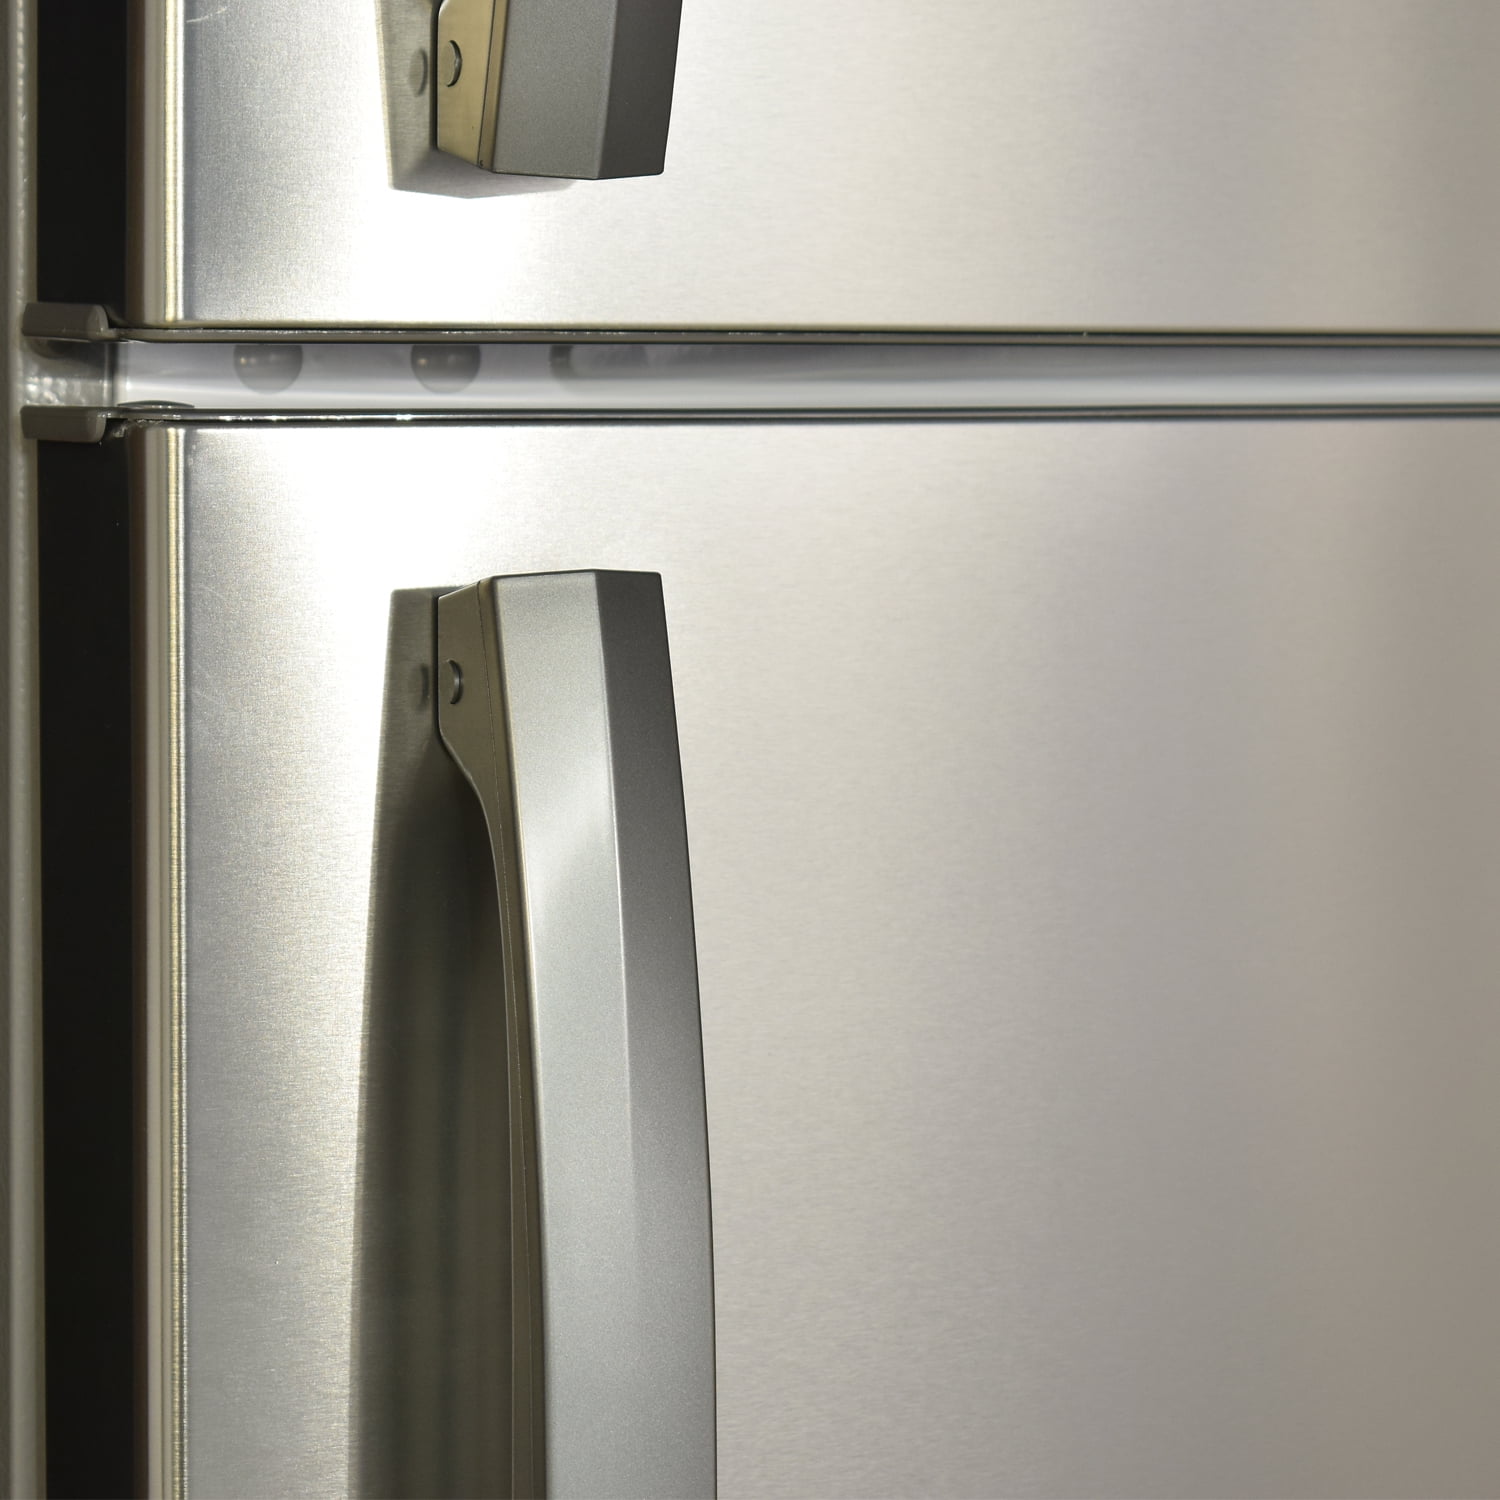 Smad 30 in Freestanding Top Freezer Refrigerator 18.3 Cu ft Stainless Steel  2 Door